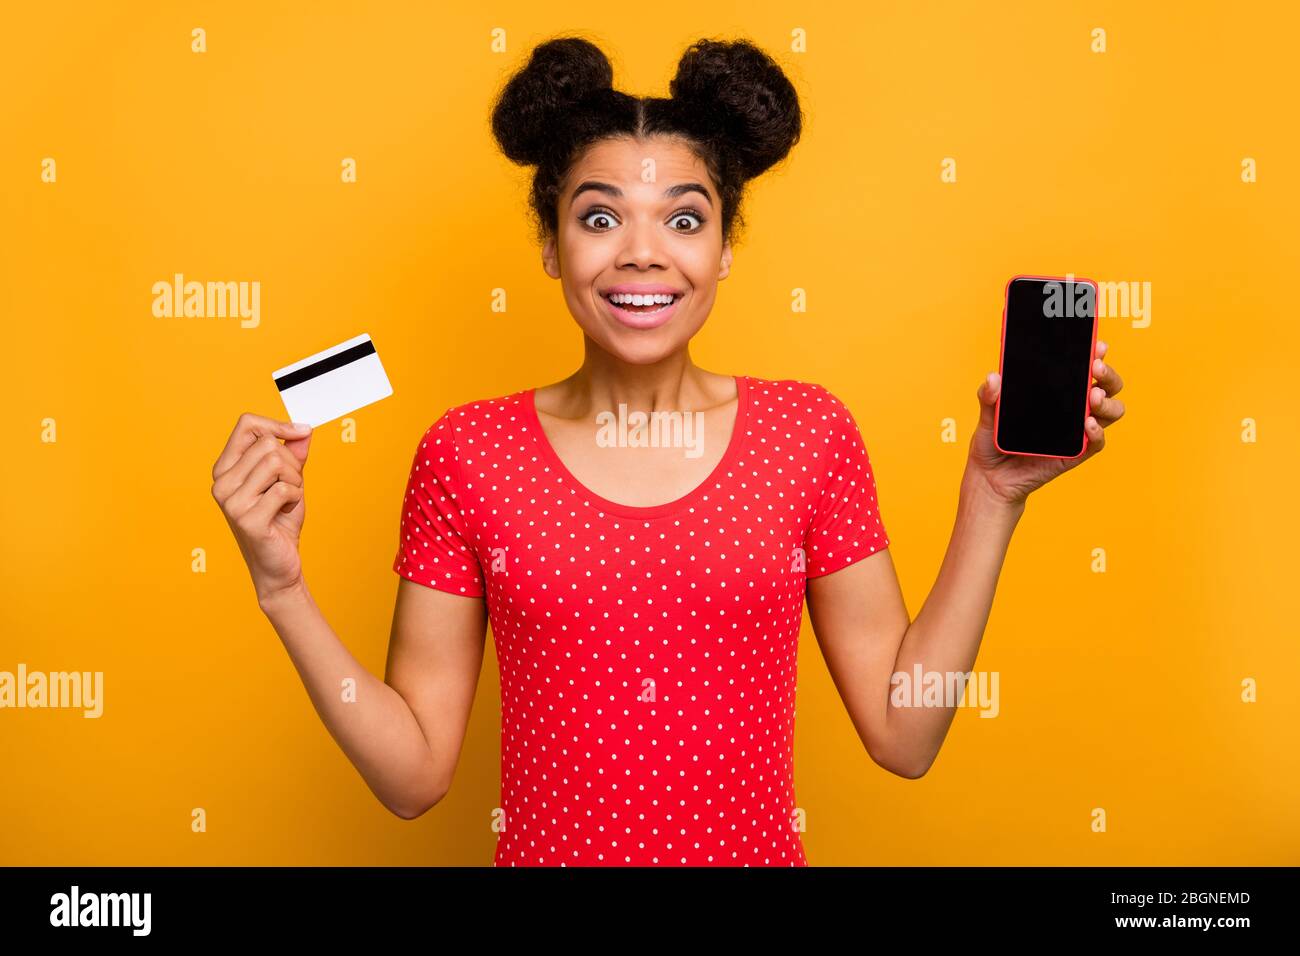 Choqué surpris afro american girl promoteur tenir carte de banque de téléphone portable impressionné incroyable facile de paiement de service de transfert en ligne porter rouge pointillé t Banque D'Images